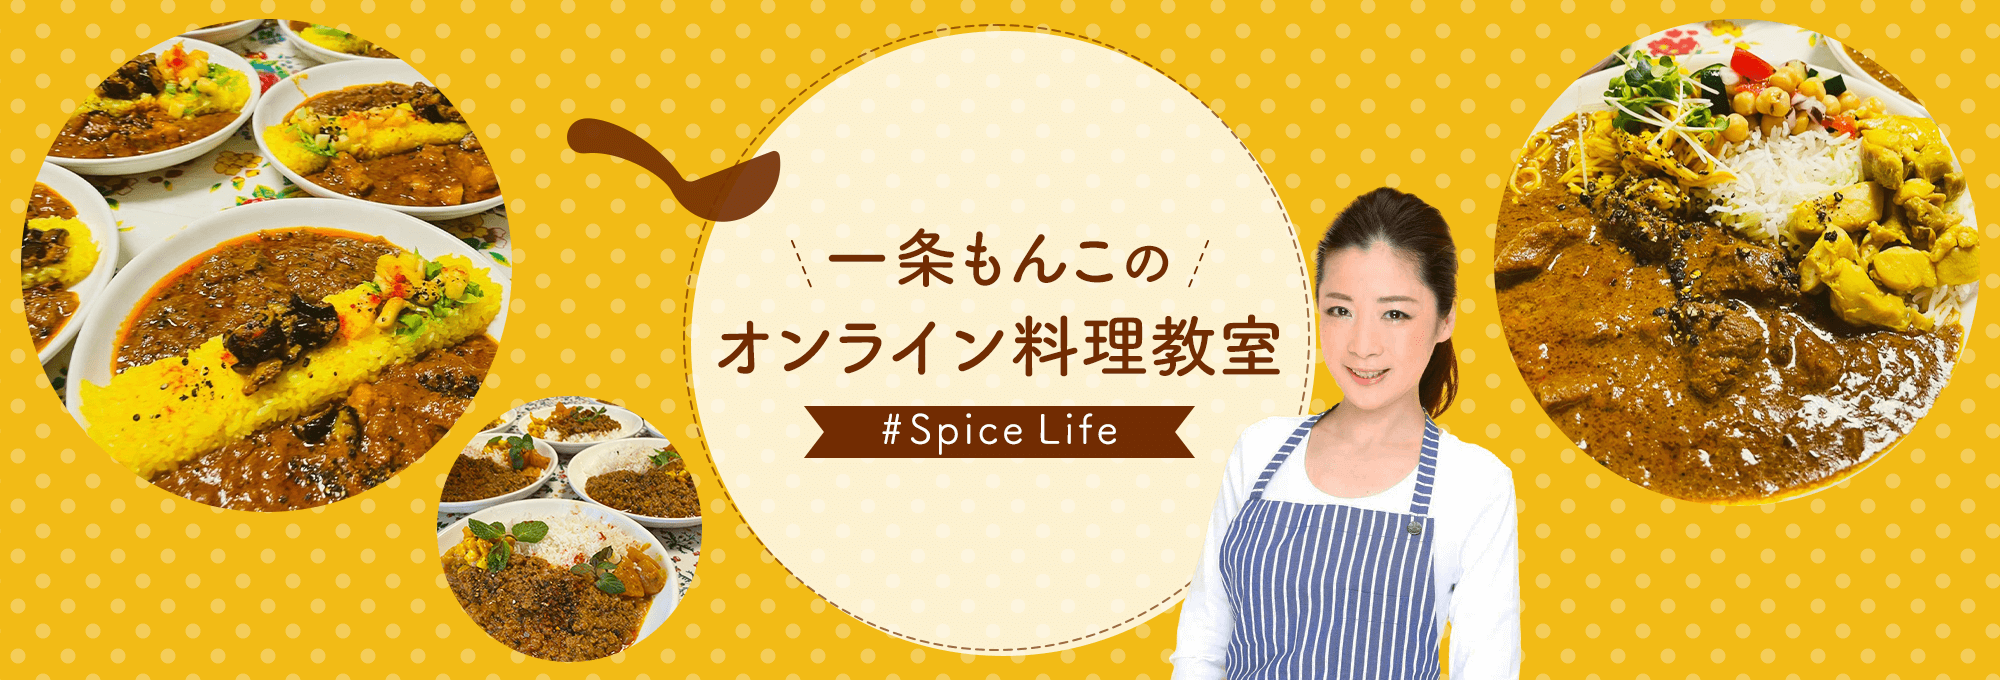 一条もんこのオンライン料理教室 #Spice Life